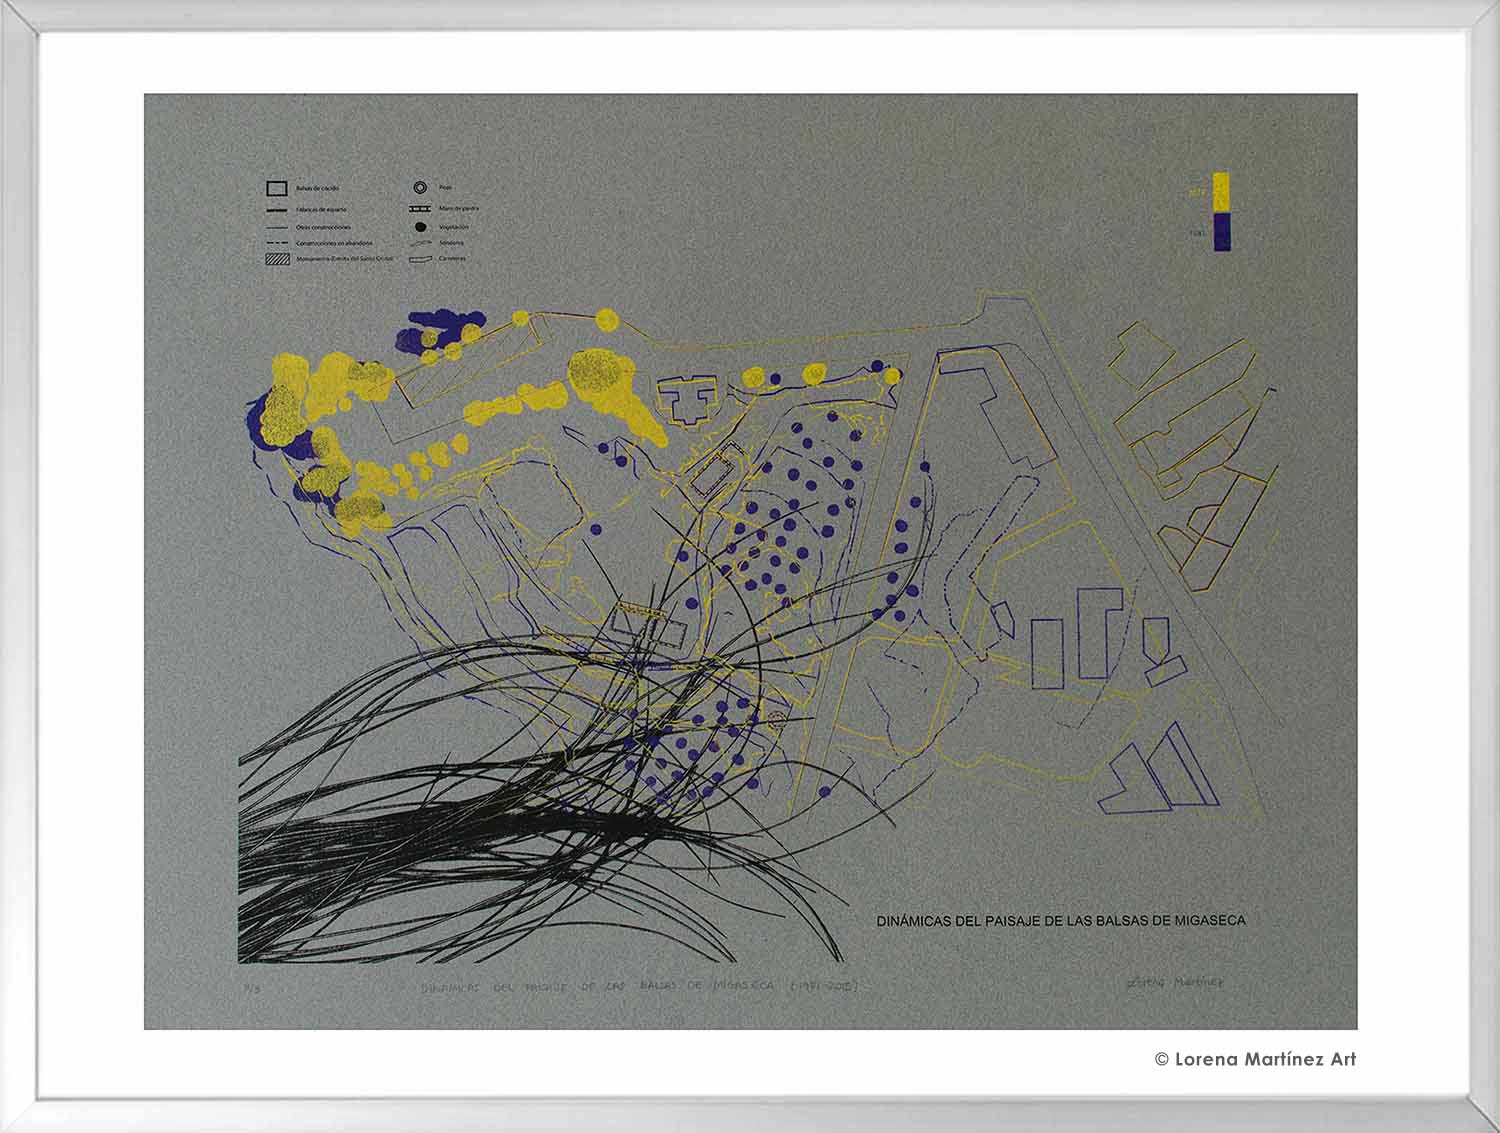 Dinámicas del paisaje de las balsas de Migaseca (1981-2015). Litografía Offset sobre papel. 70x80 cm